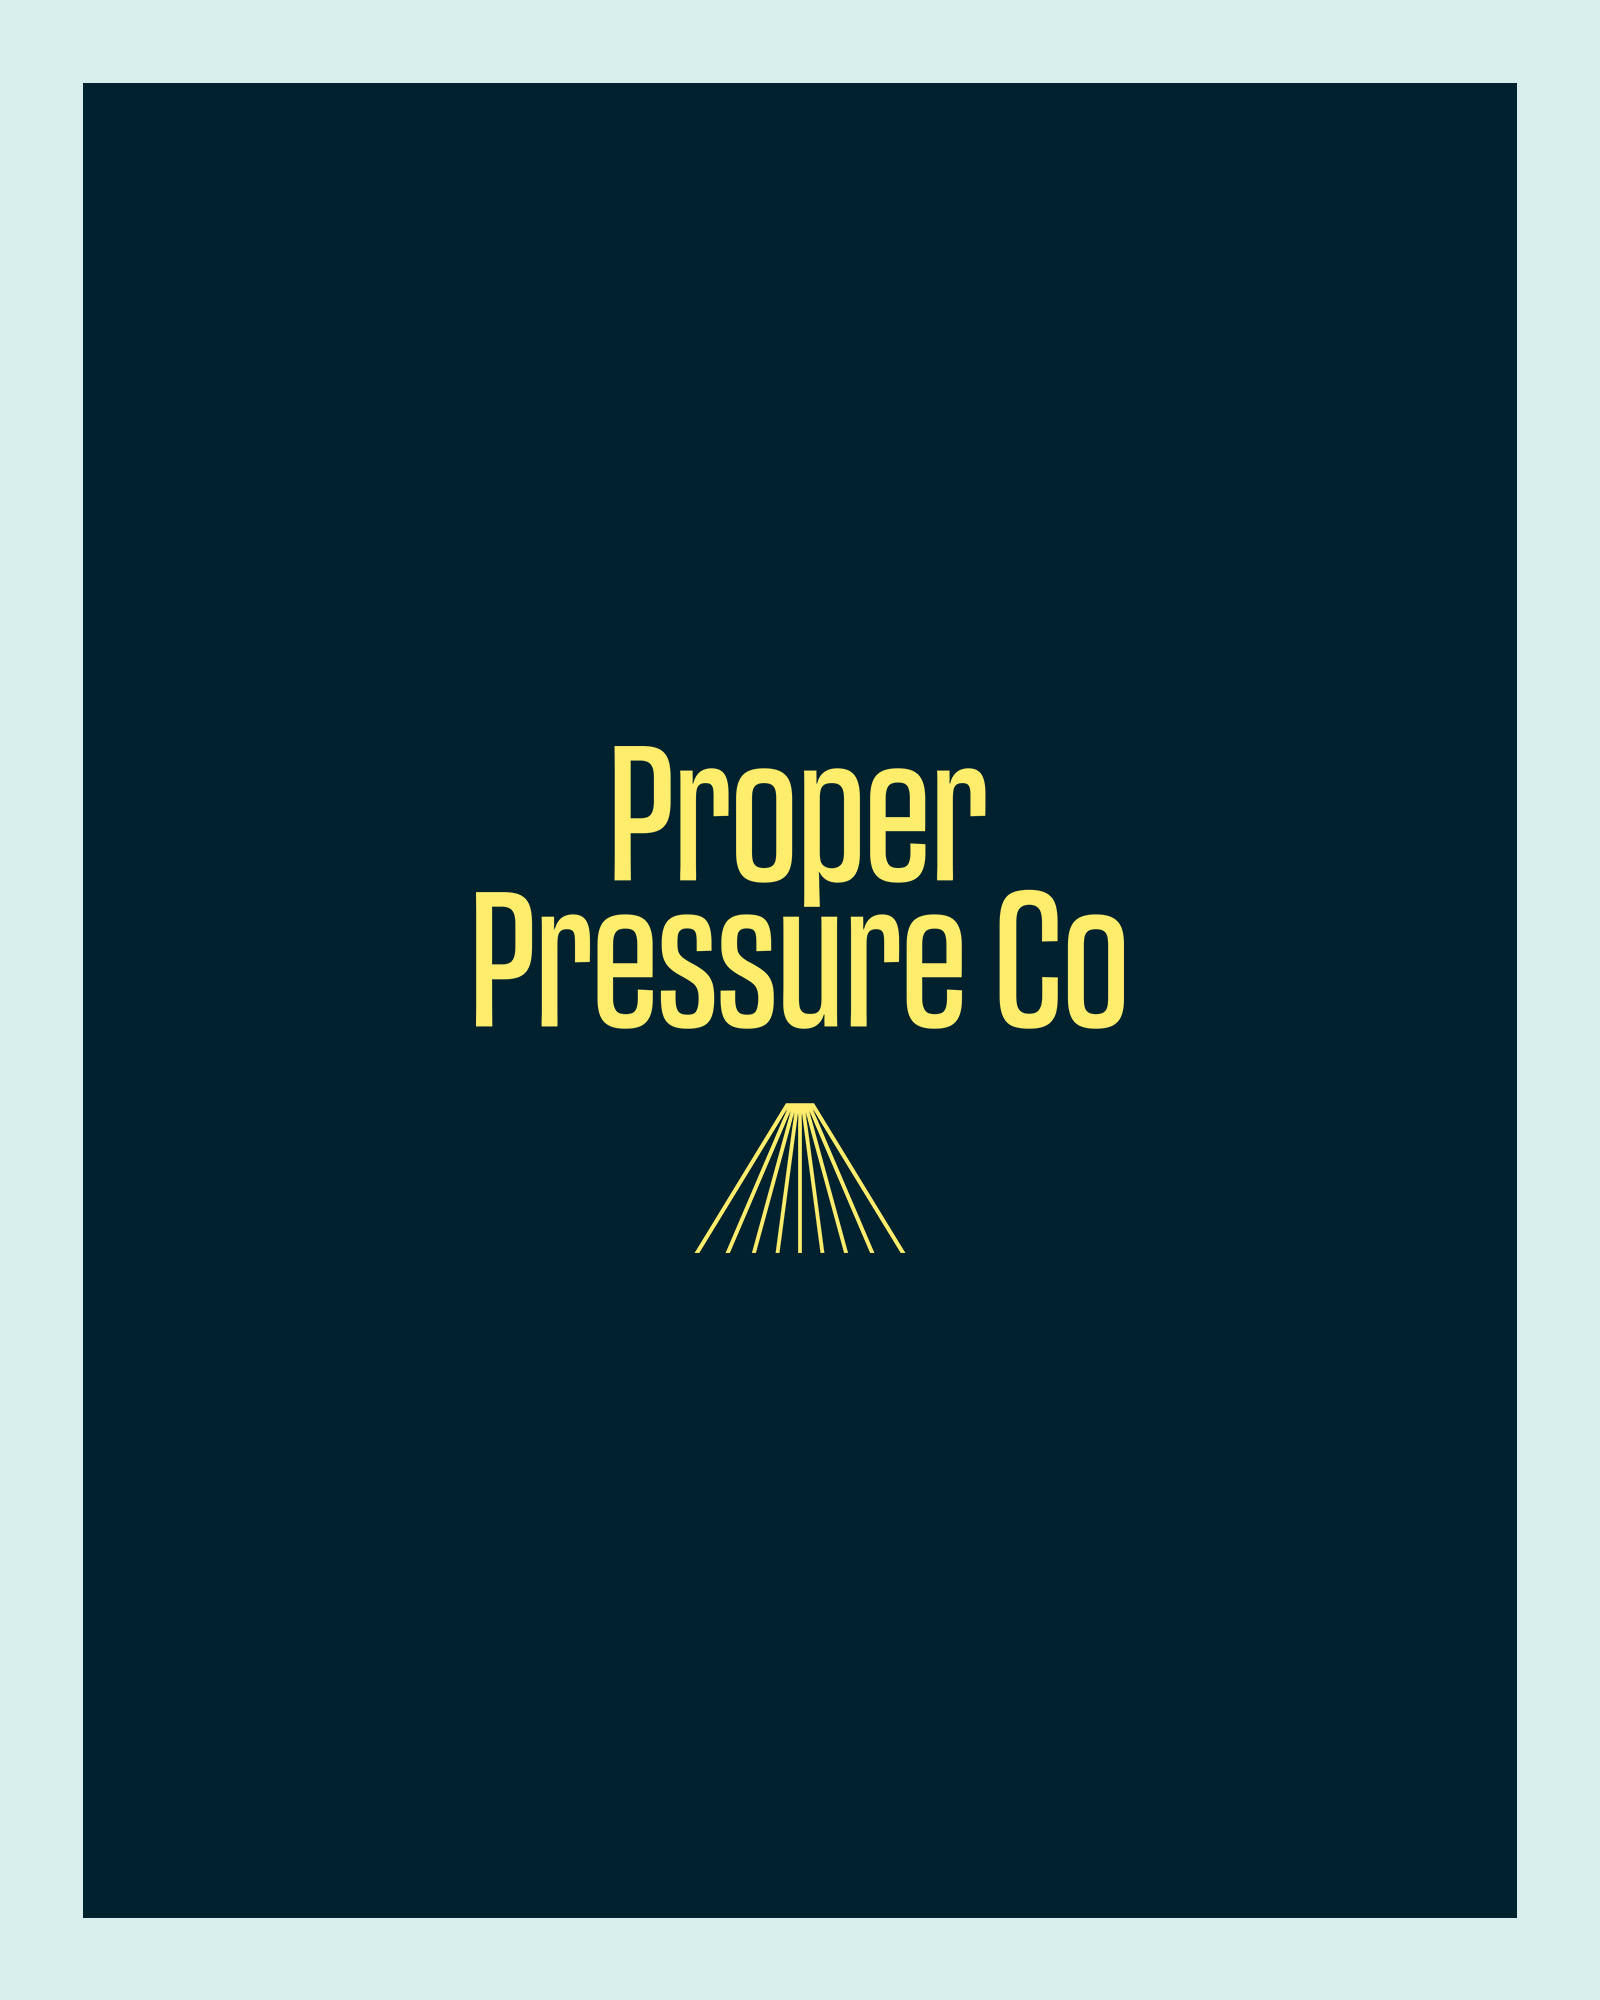 Proper Pressure Co branding and website design by Leysa Flores Design